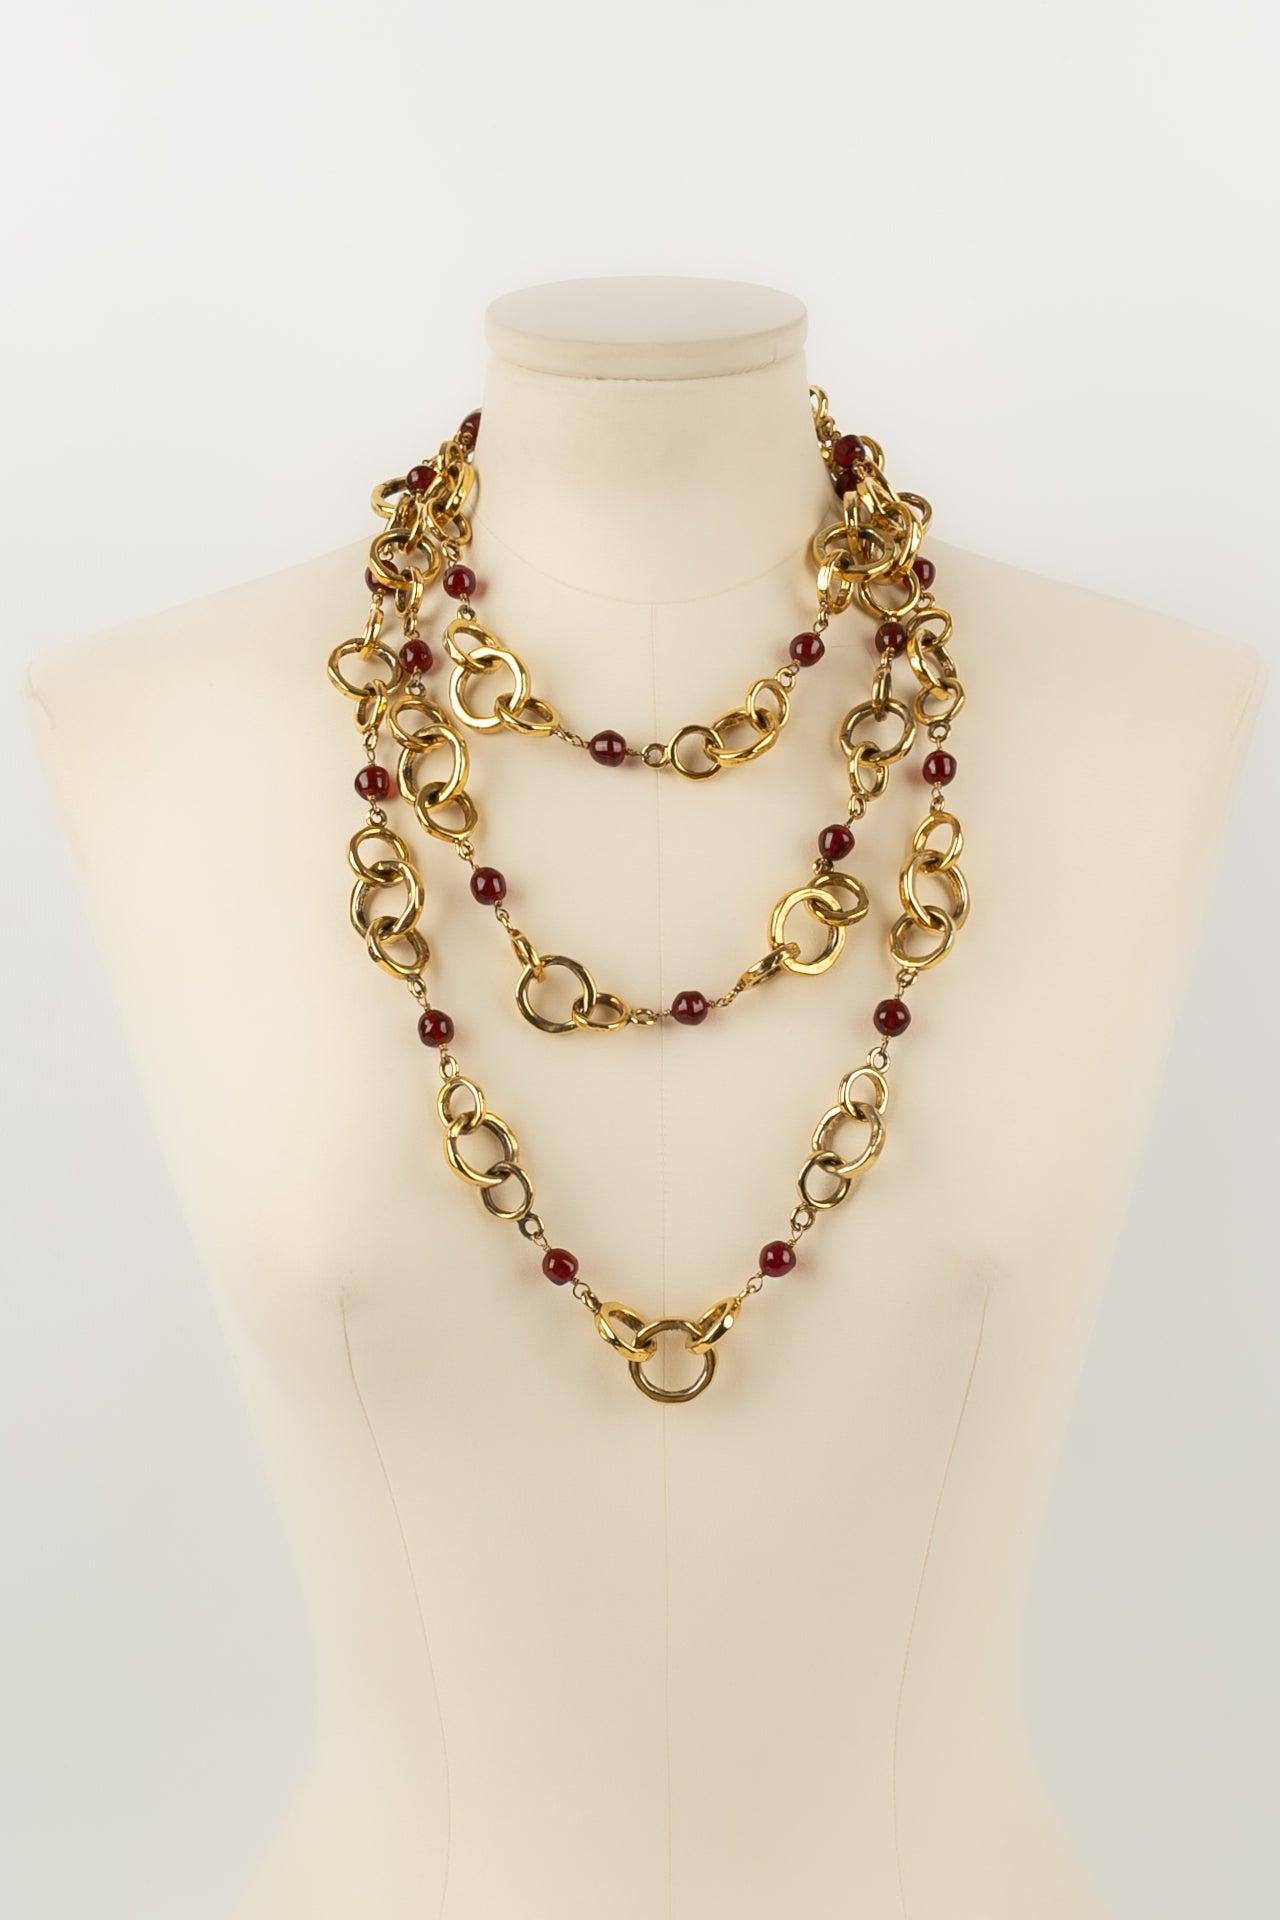 Chanel - Lange Halskette aus goldenem Metall und roten Glasperlen. Collection'S 1984.

Zusätzliche Informationen:
Abmessungen: Länge: 185 cm
Zustand: Sehr guter Zustand
Sellers Ref-Nummer: CB138